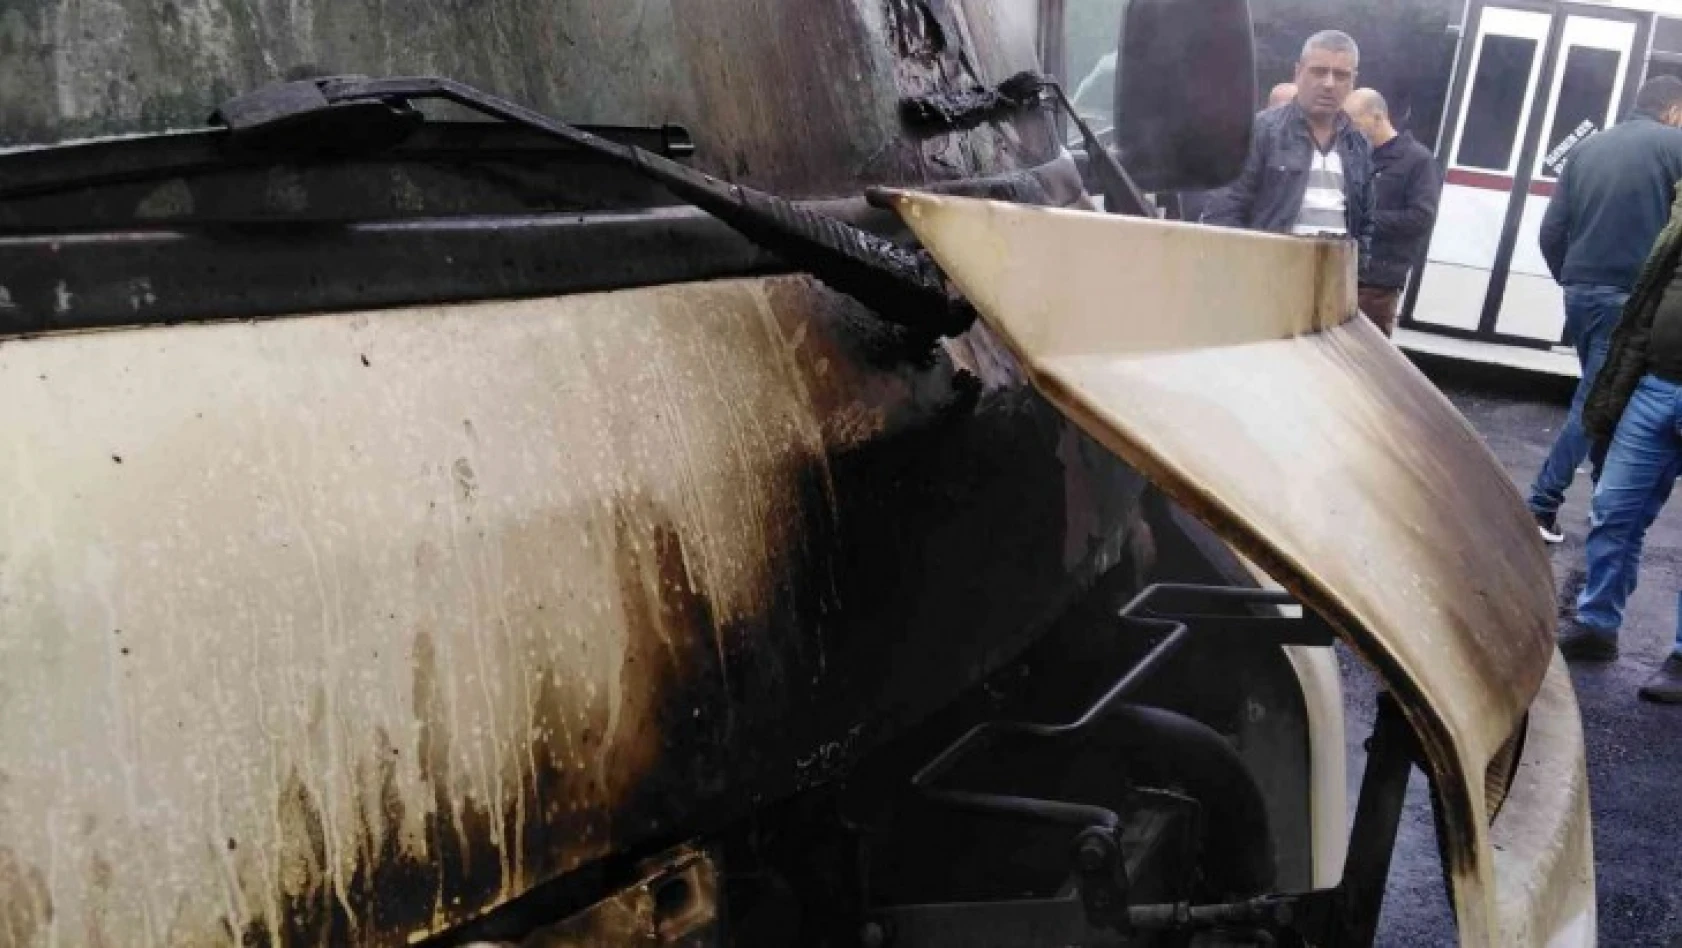 Elazığ'da park halindeki minibüs yandı